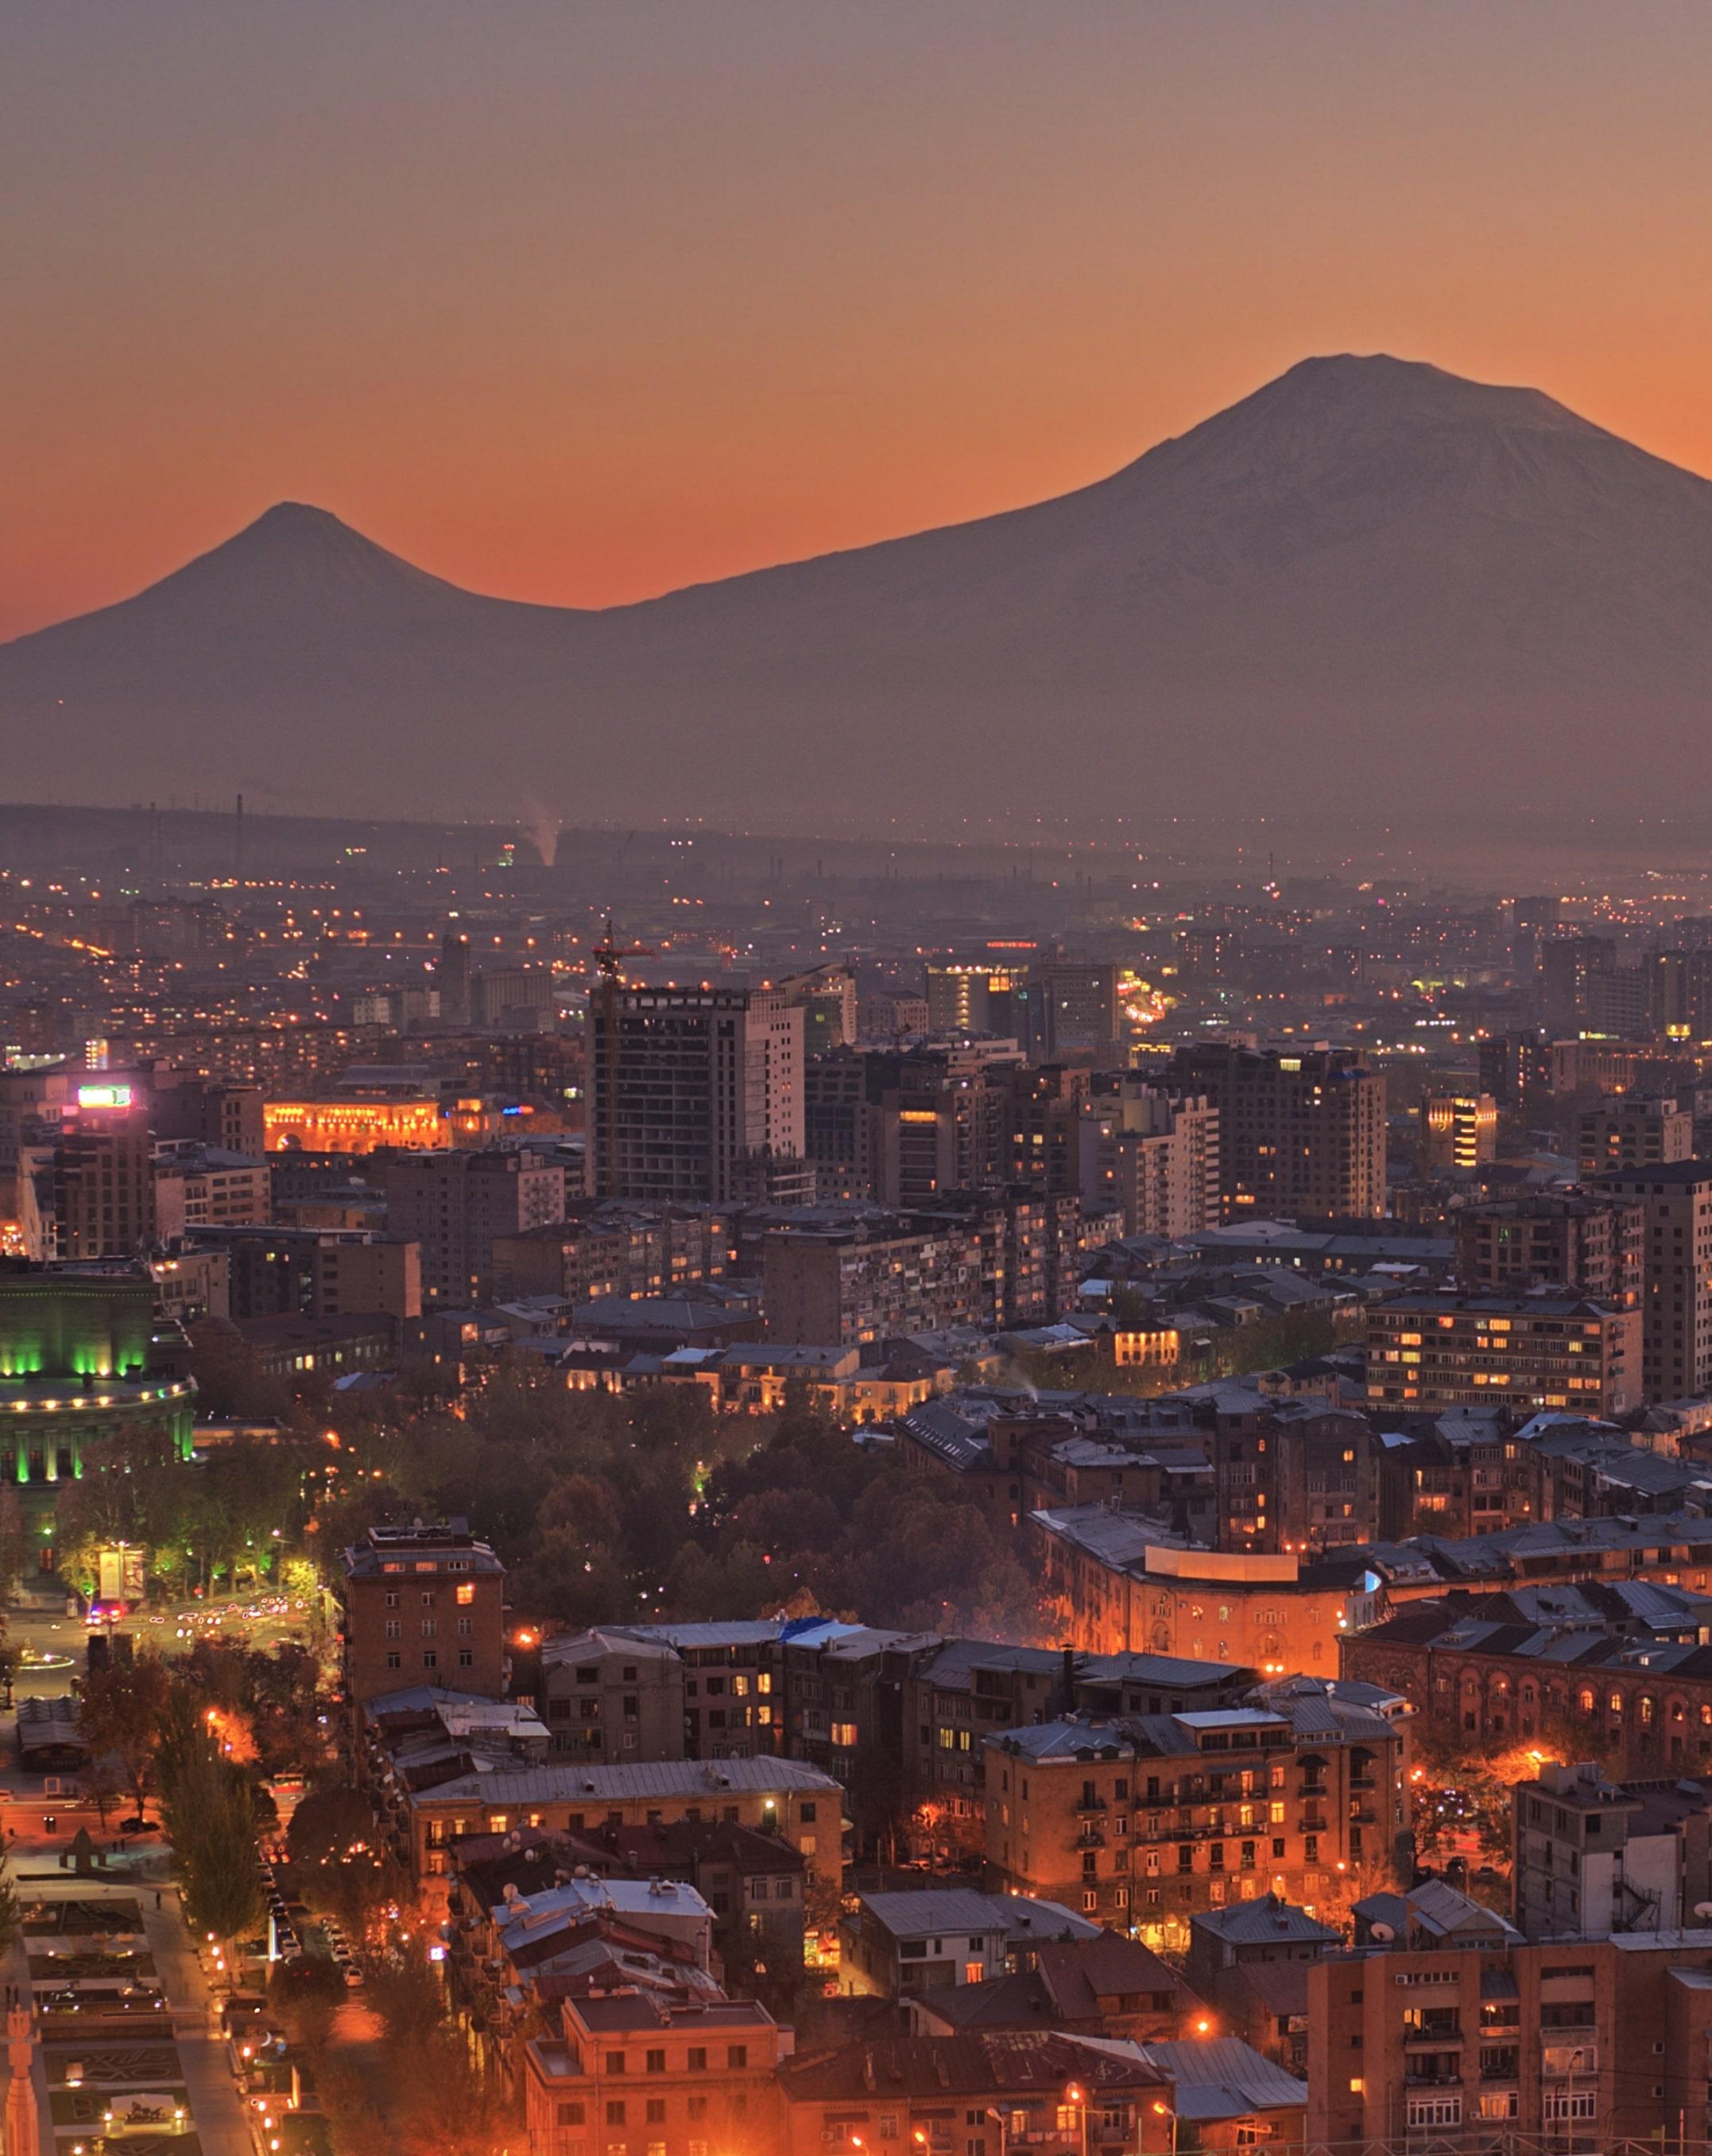 Armenia, Official Travel Website